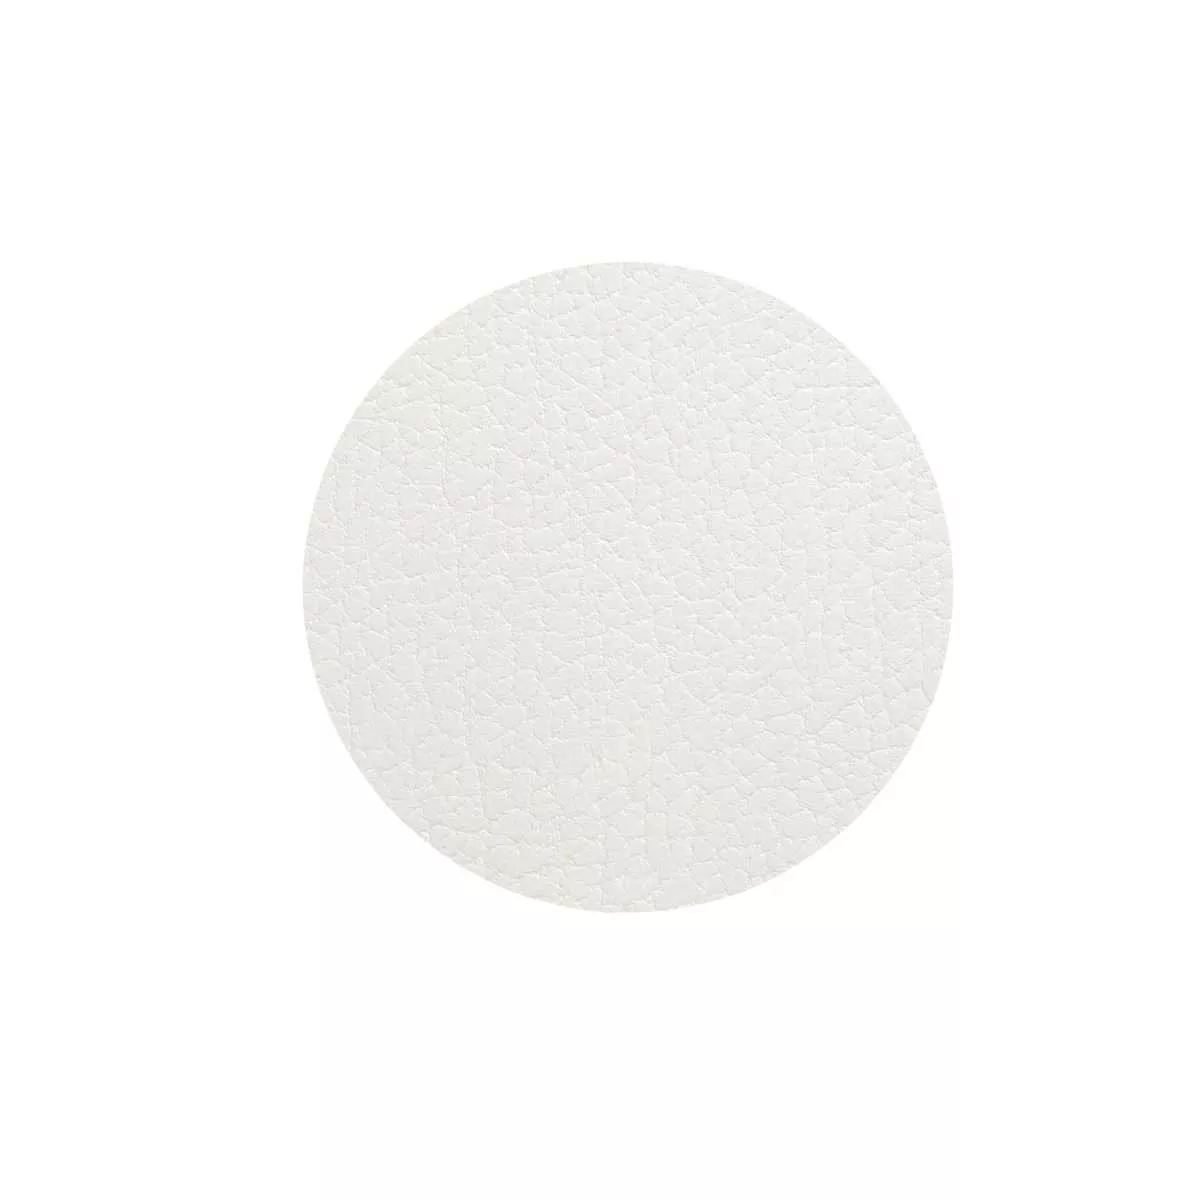 Подставка под стакан круглая Linddna Bull White, диаметр 10 см (98317) - Фото nav 1